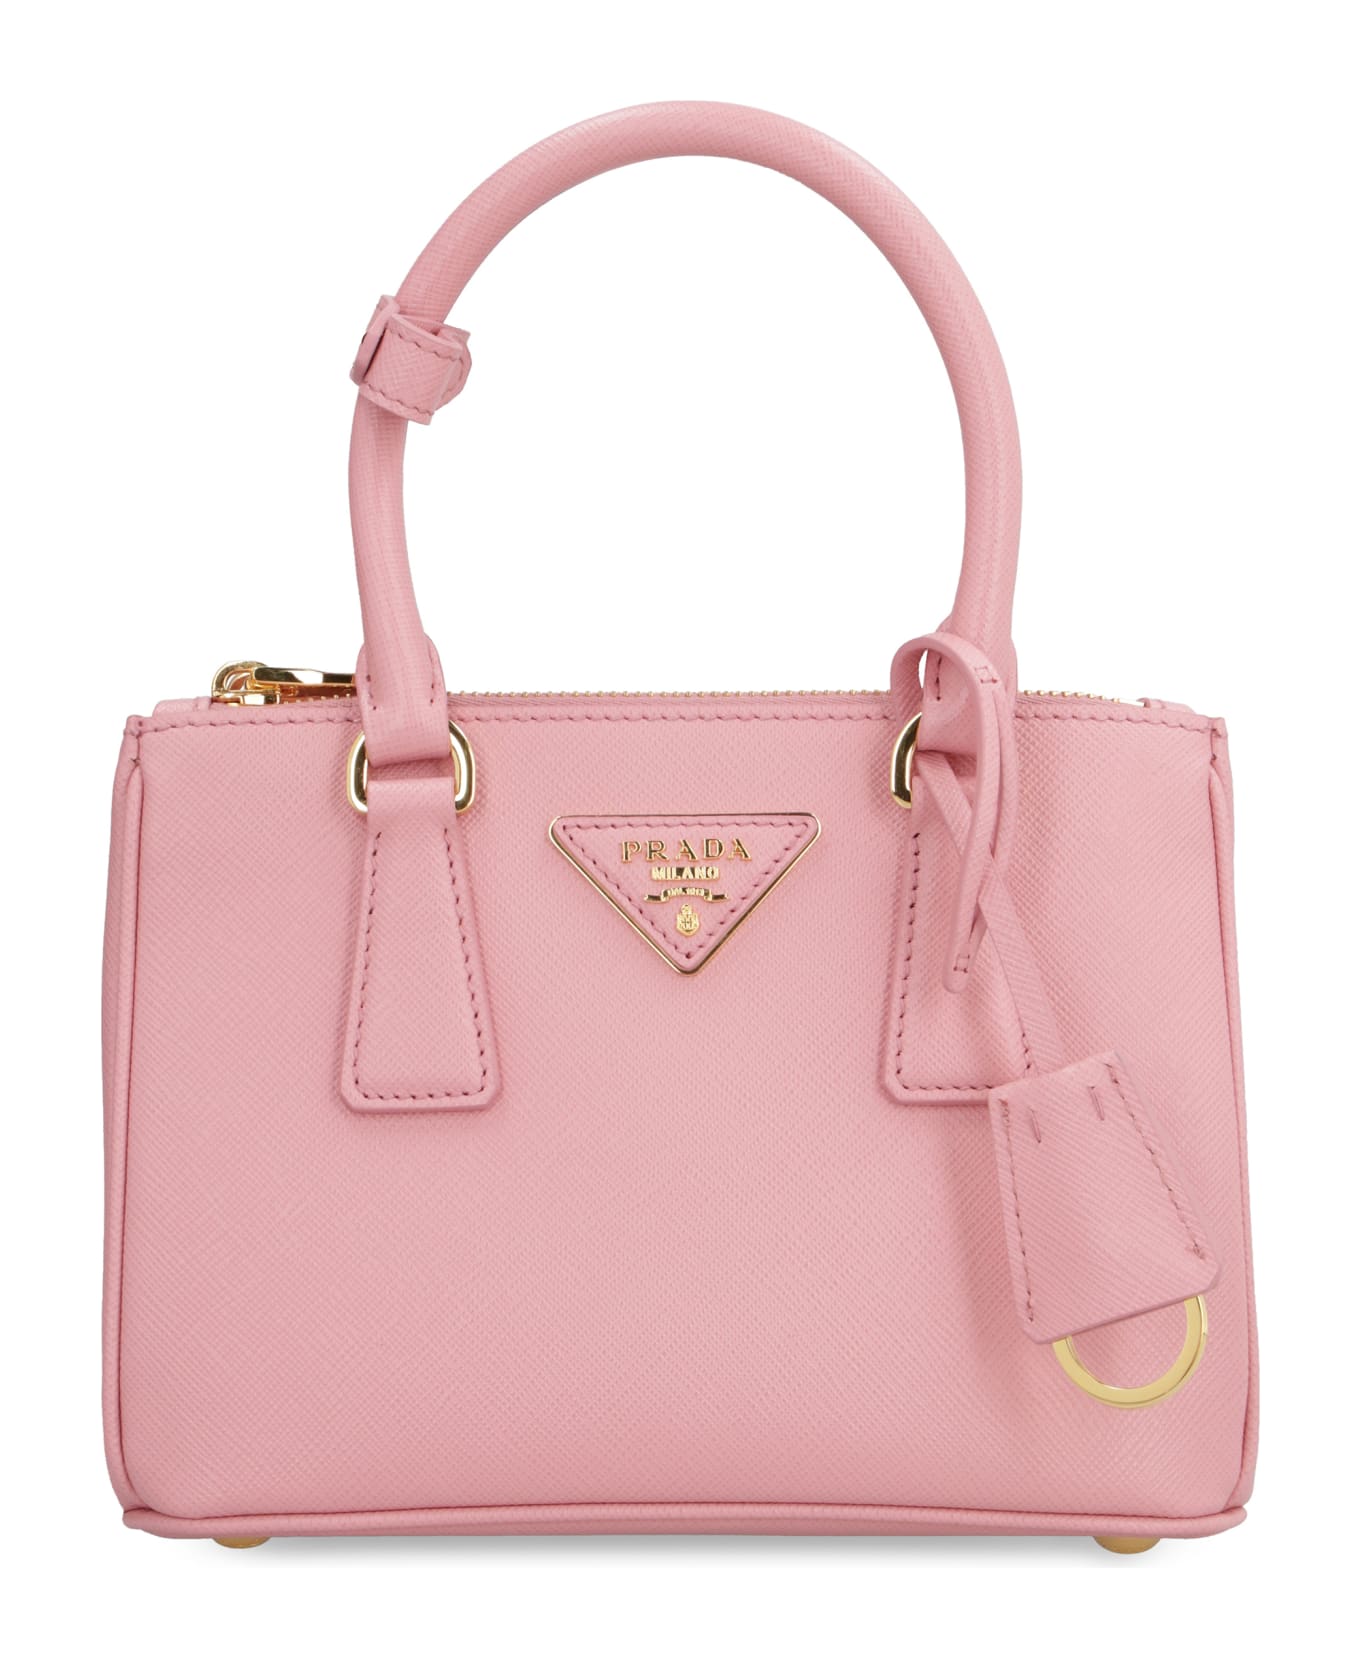 Prada Galleria Handbag - Pink トートバッグ